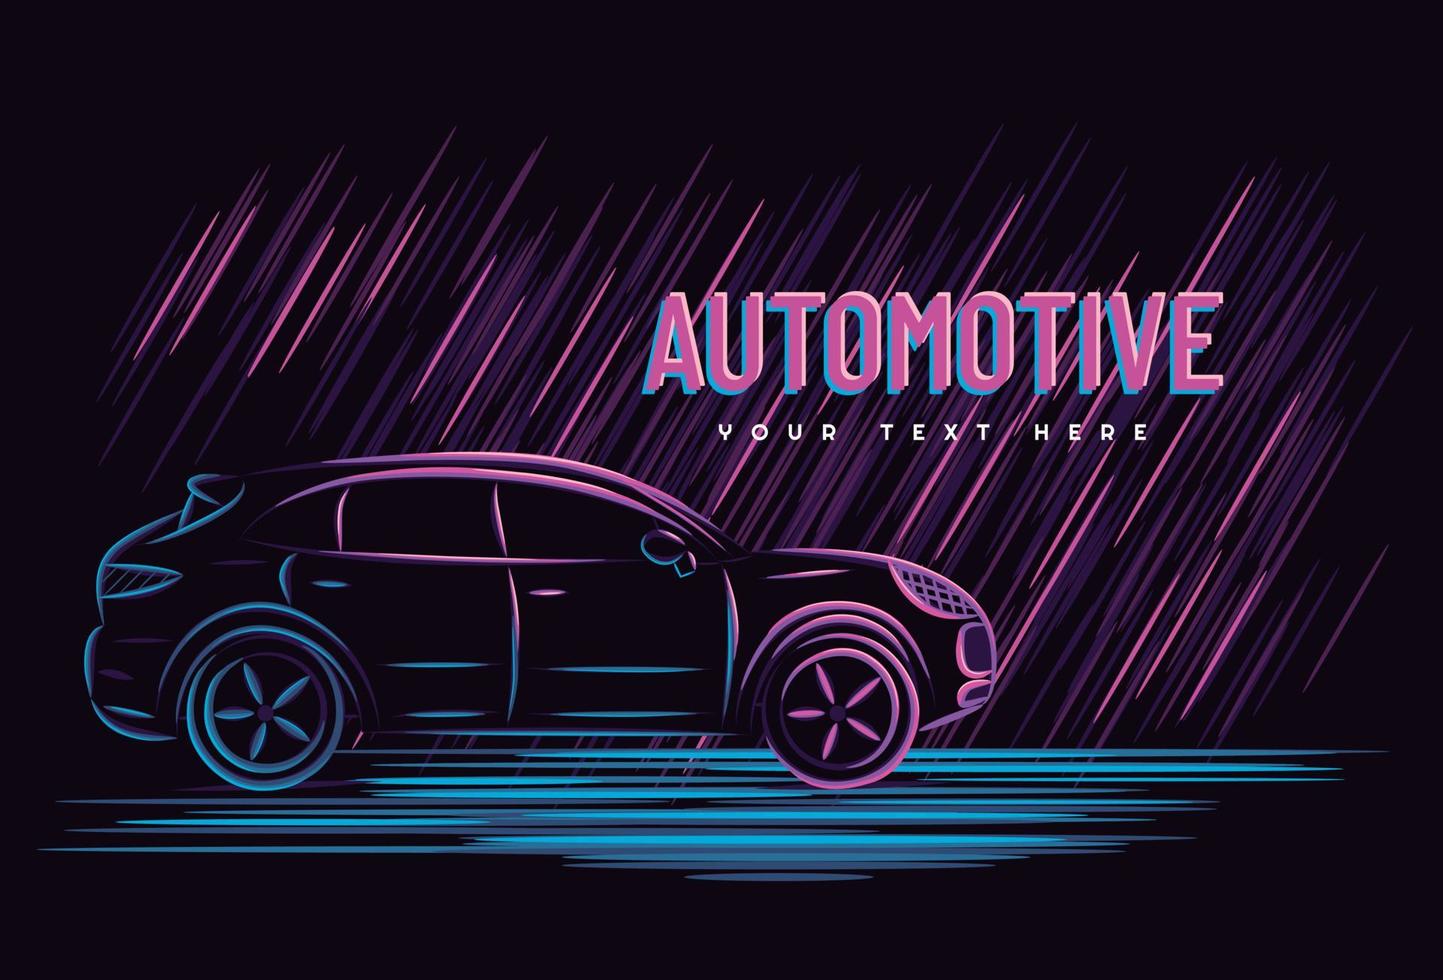 Illustrationsvektorgrafik des Autoautomobilkonzepts mit Linienkunst-Neonzeichenstil, gut für T-Shirt, Banner, Poster, Zielseite, Flyer. vektor